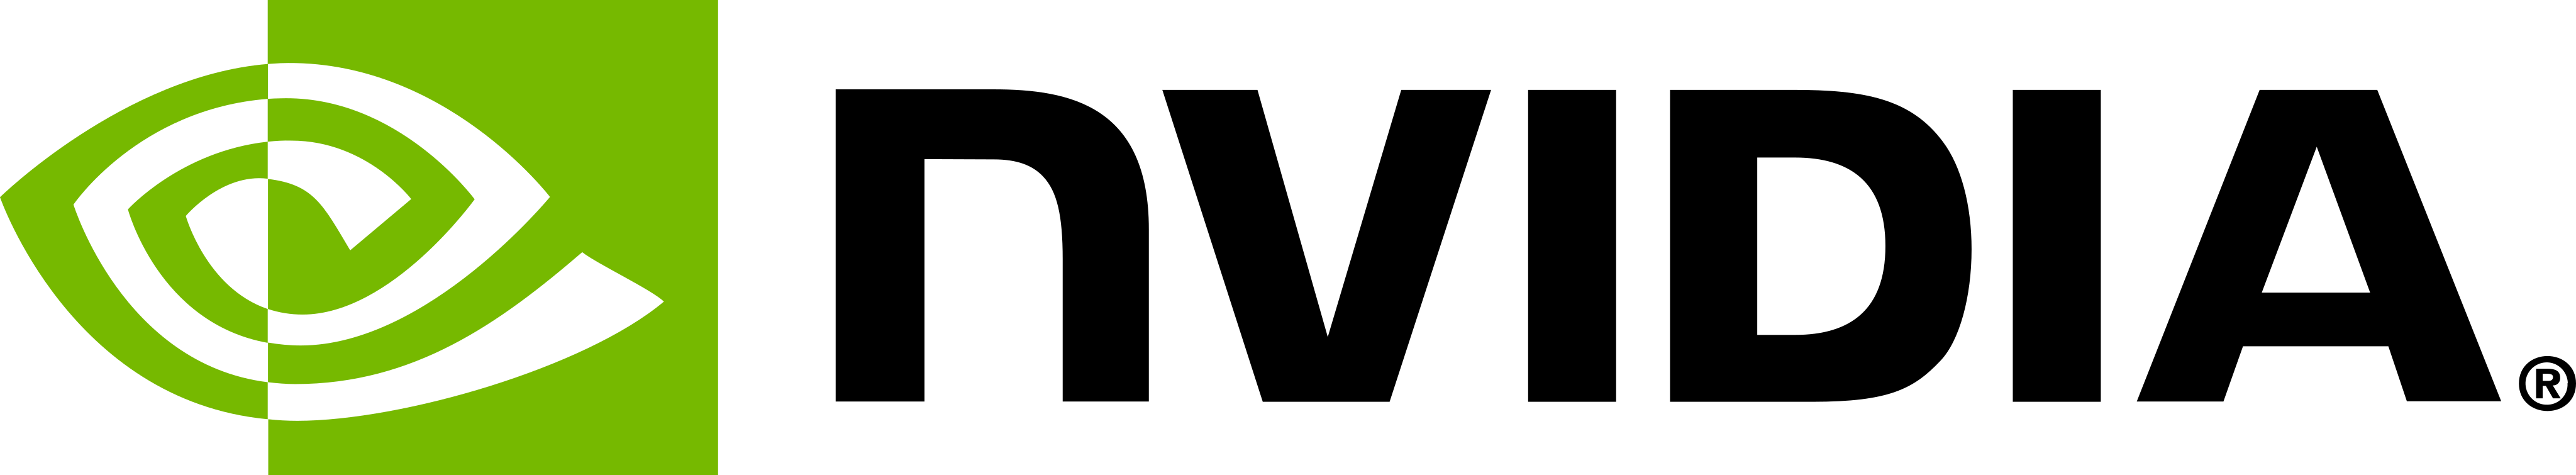 nvidia-logo-16